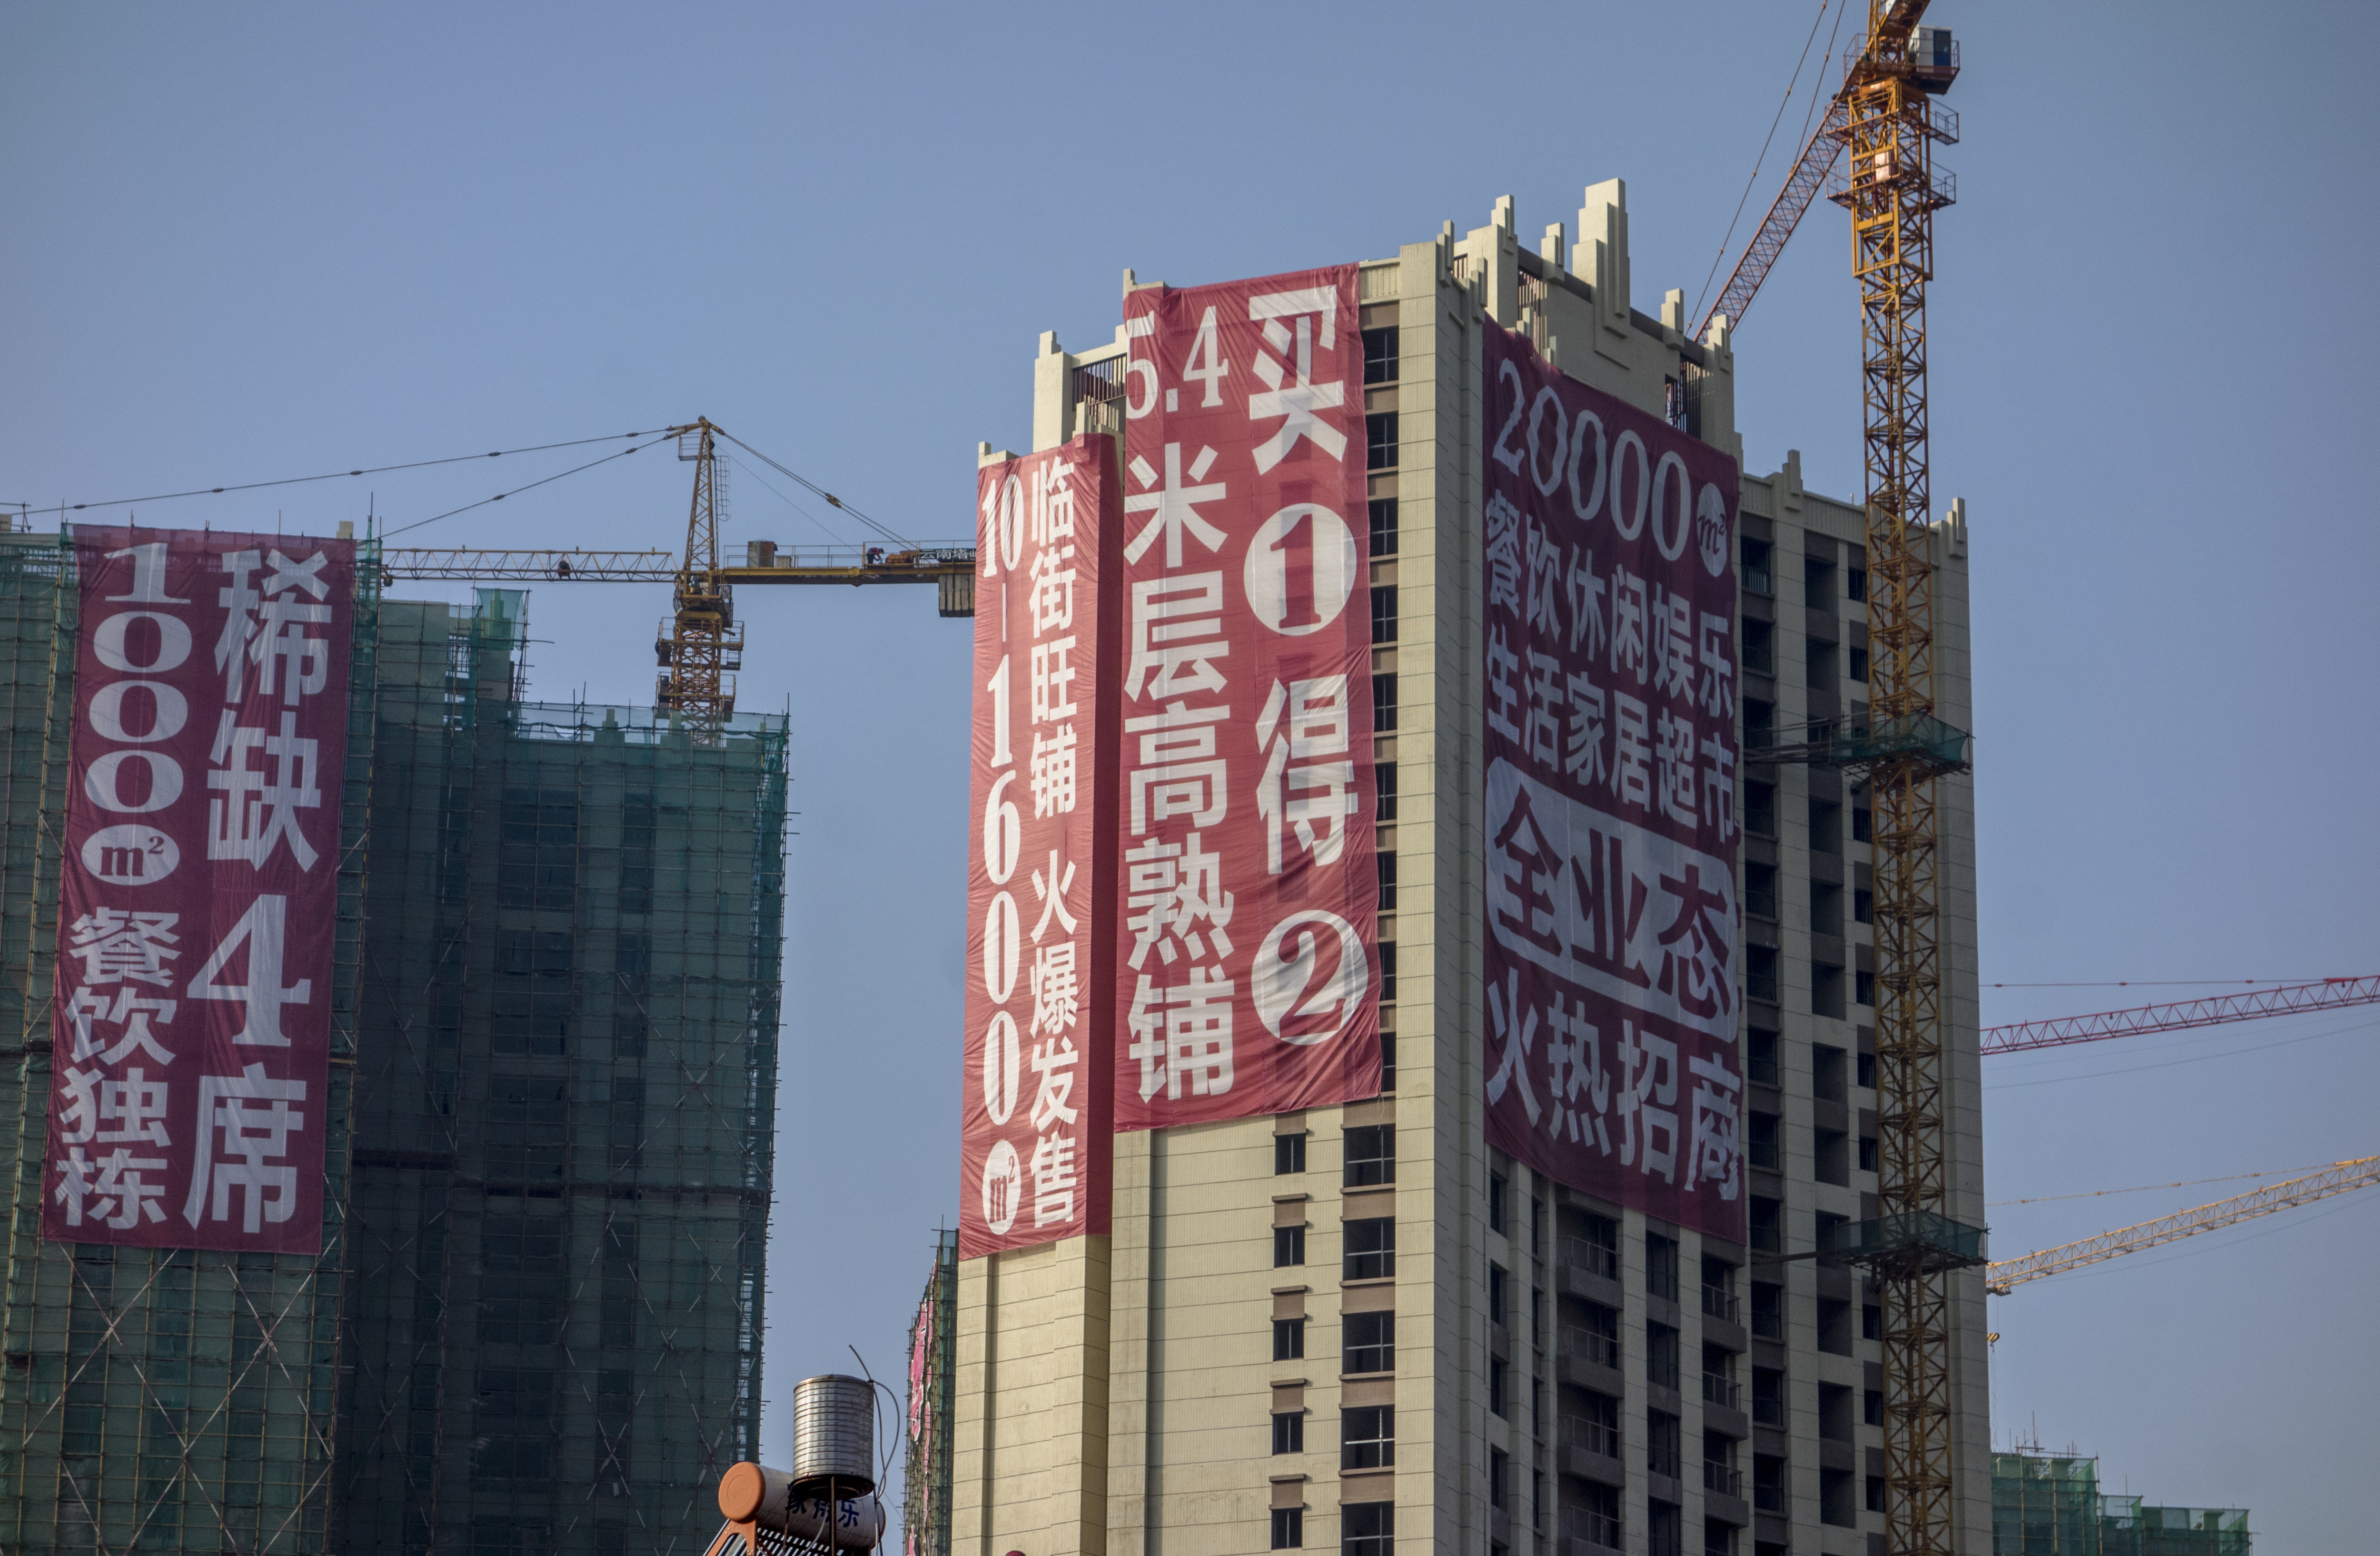 Tiongkok Hancurkan 15 Apartemen Pakai Bom Karena Pengembangnya Kehabisan Duit